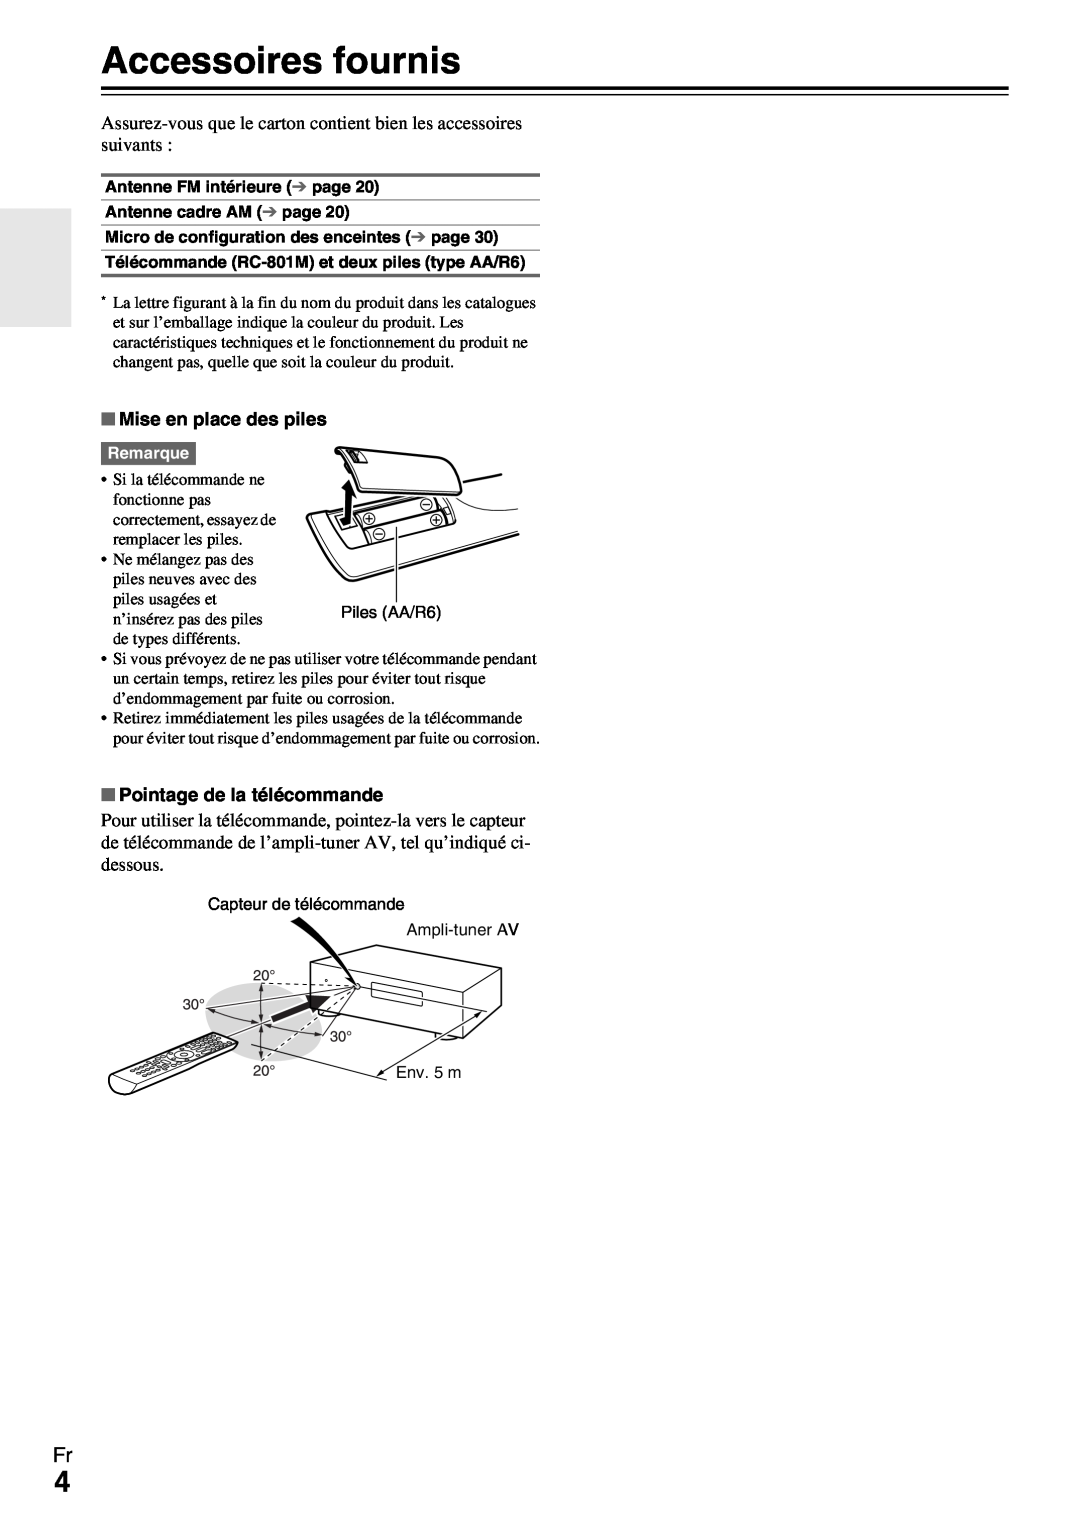 Onkyo HT-R990 instruction manual Accessoires fournis, Mise en place des piles, Pointage de la télécommande 